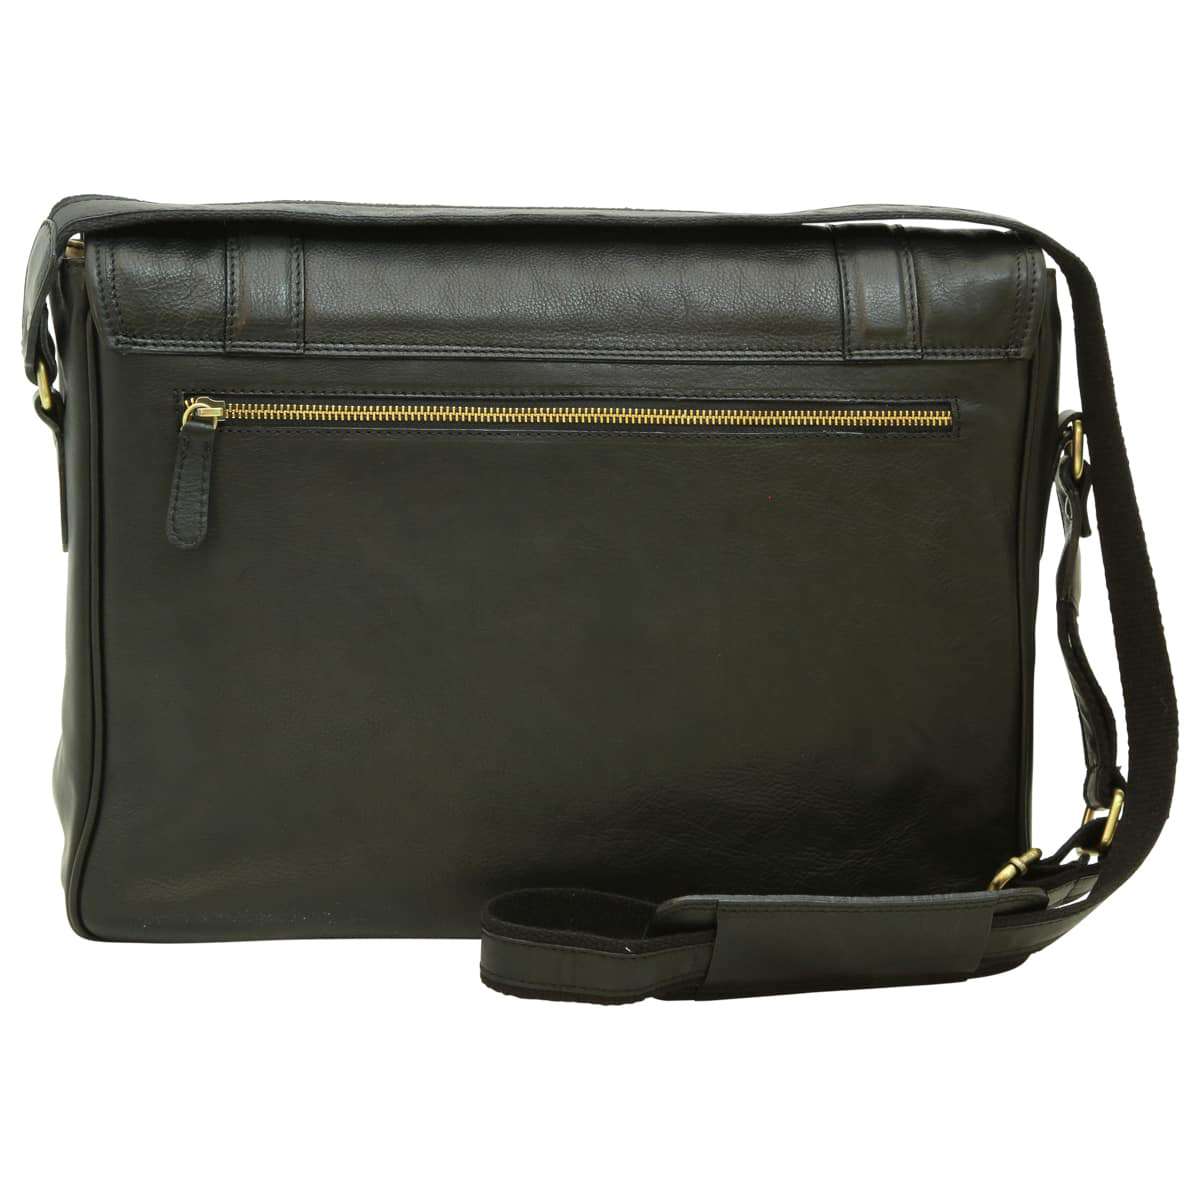 Soft Calfskin Leather Messenger Bag - Black | 030491NE US | Old Angler Firenze